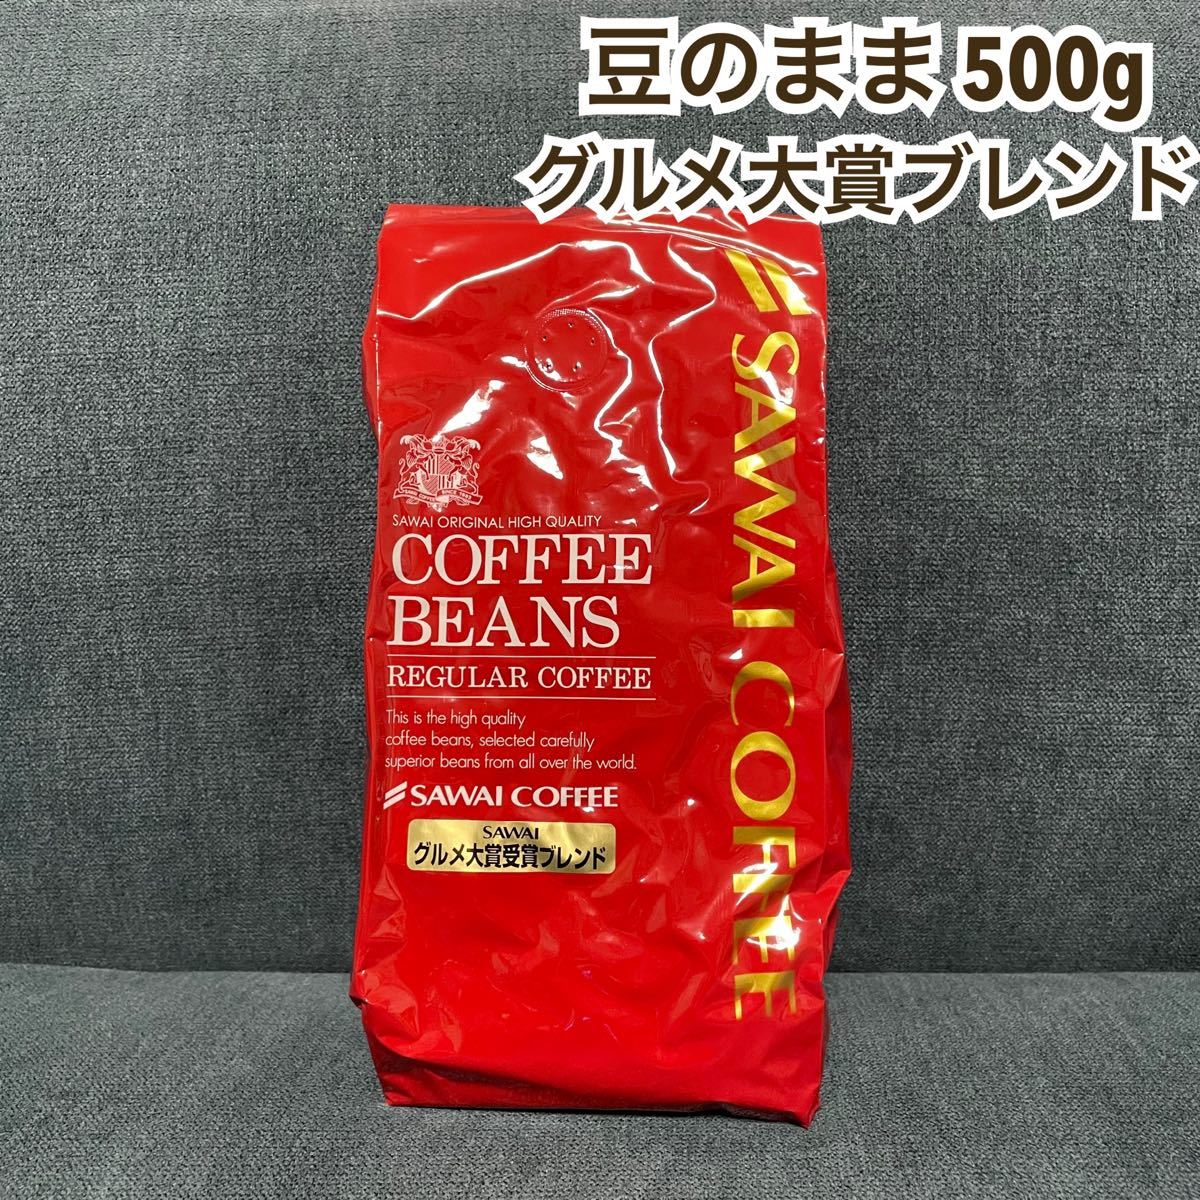 グルメ大賞受賞ブレンド 澤井珈琲 コーヒー 豆 500g